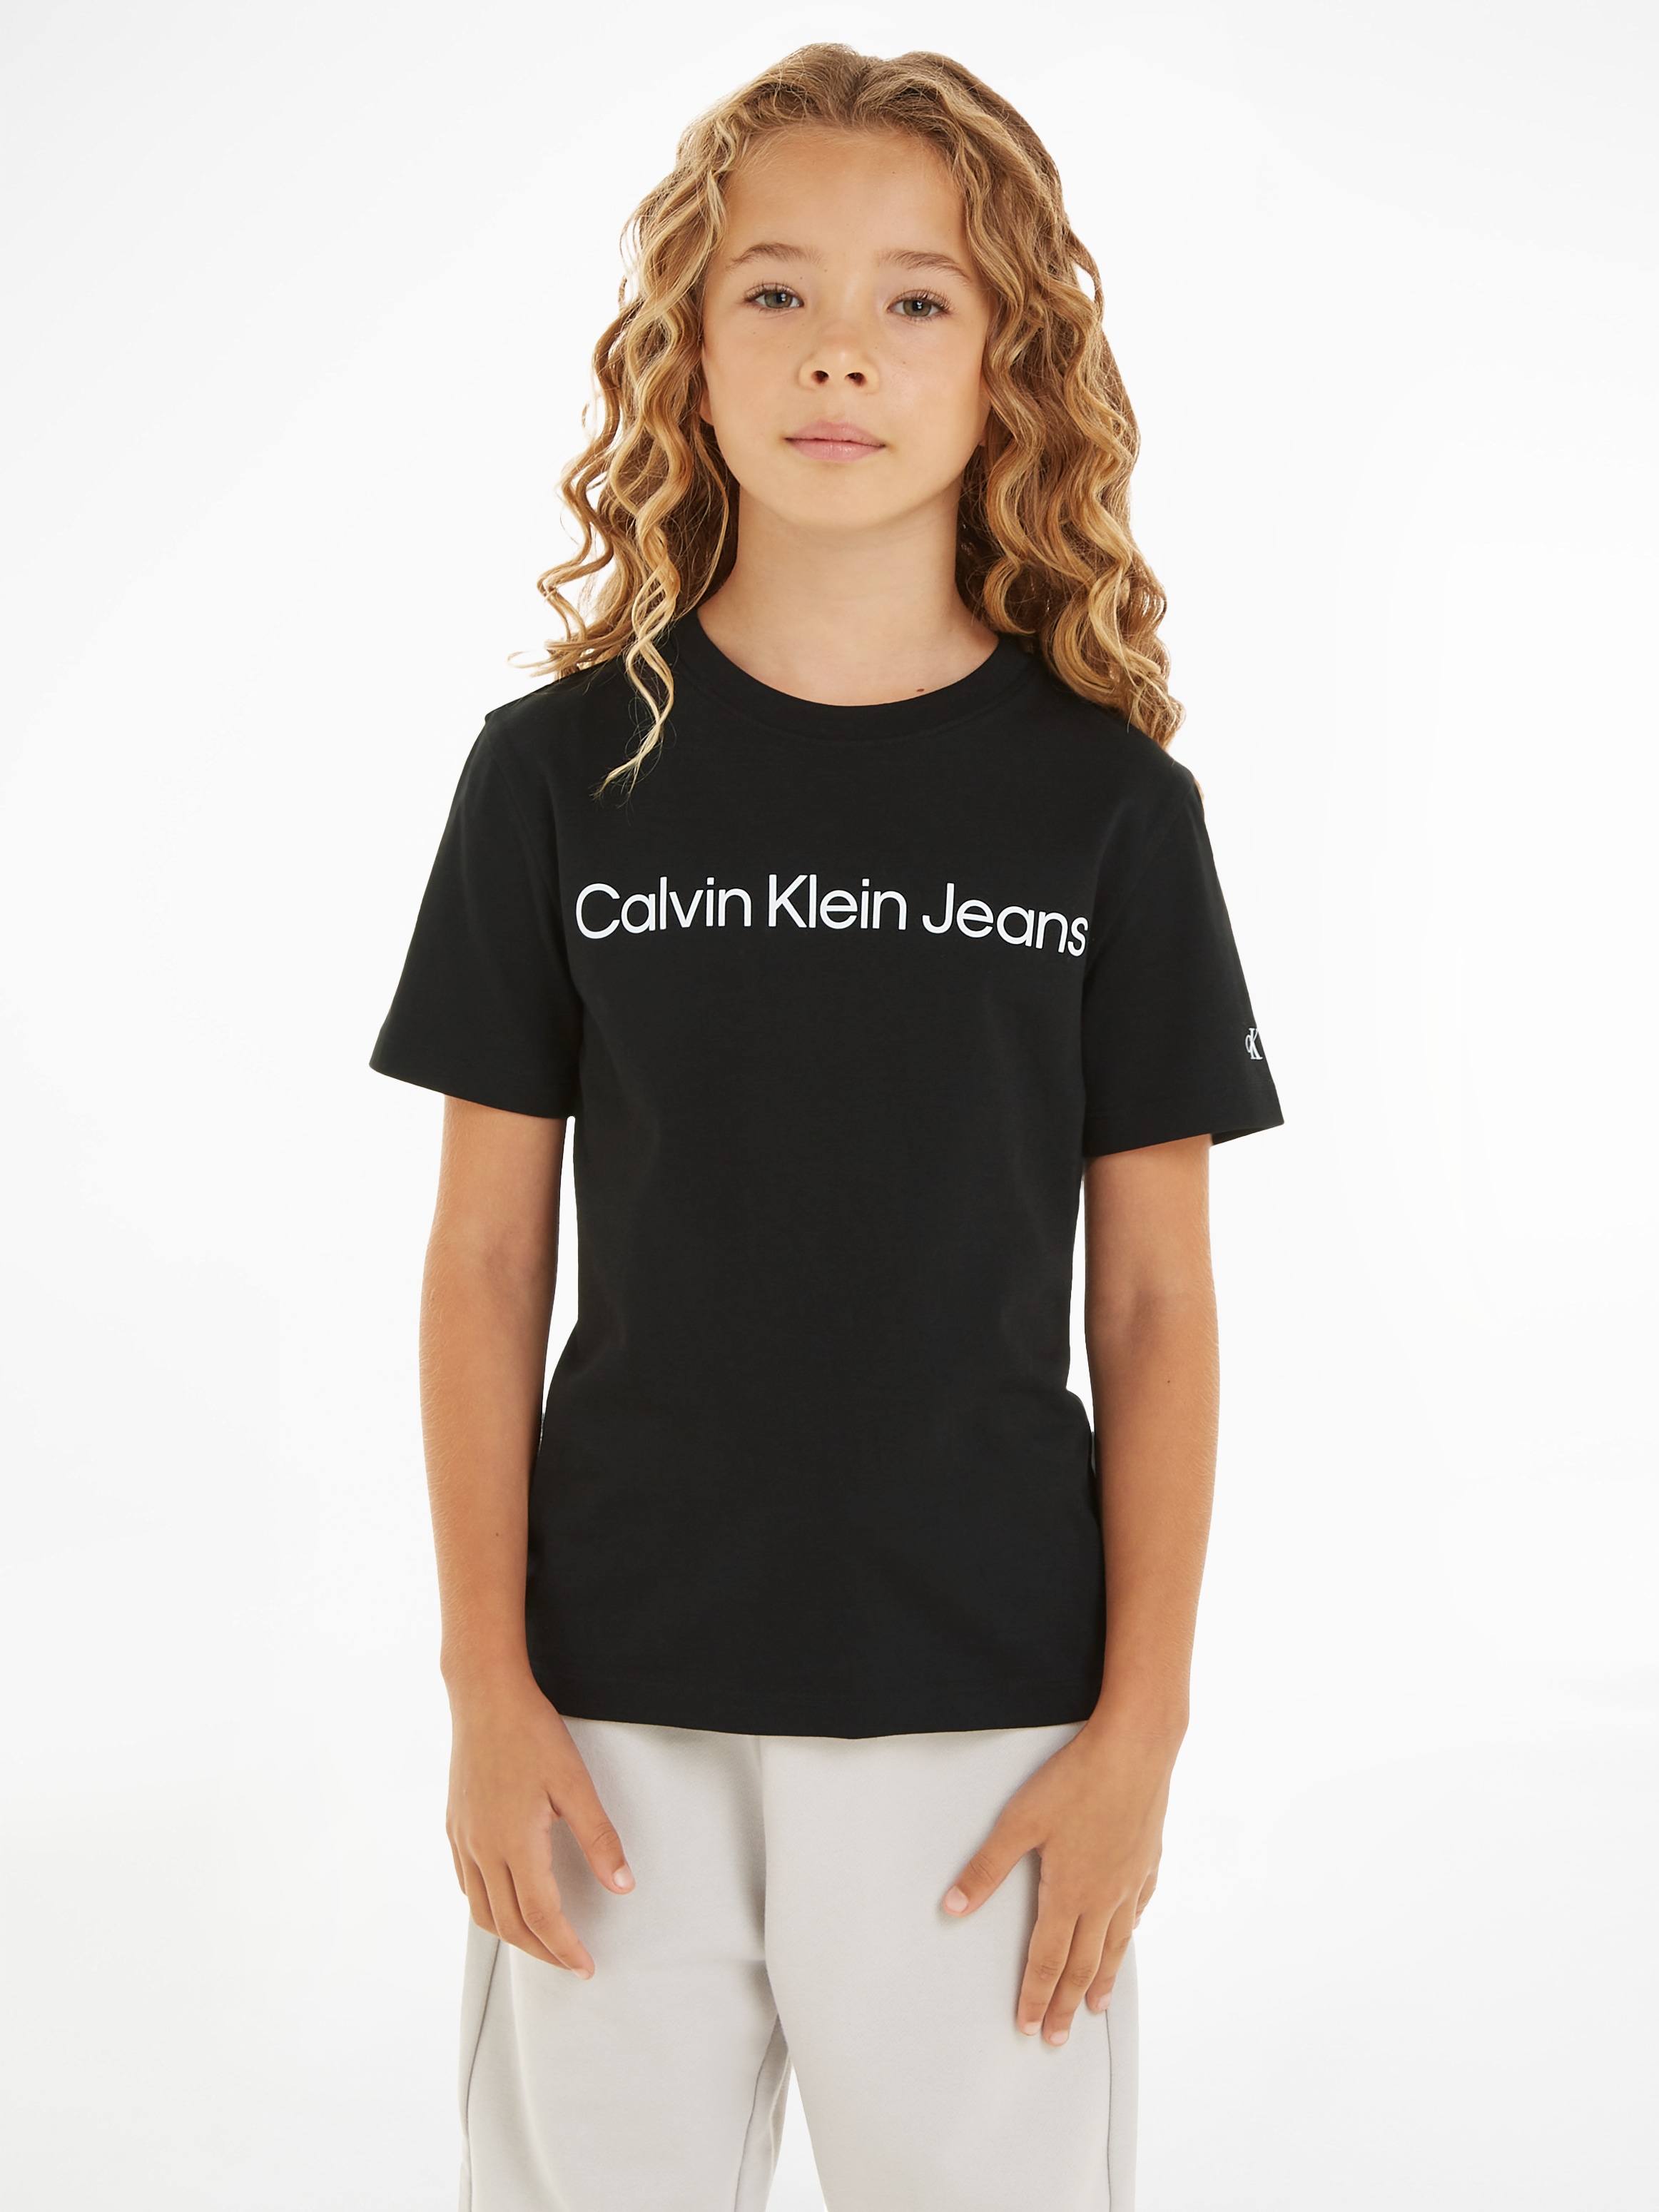 Calvin Klein Jeans Sweatshirt online T-SHIRT«, LOGO SS shoppen mit Logoschriftzug »INST